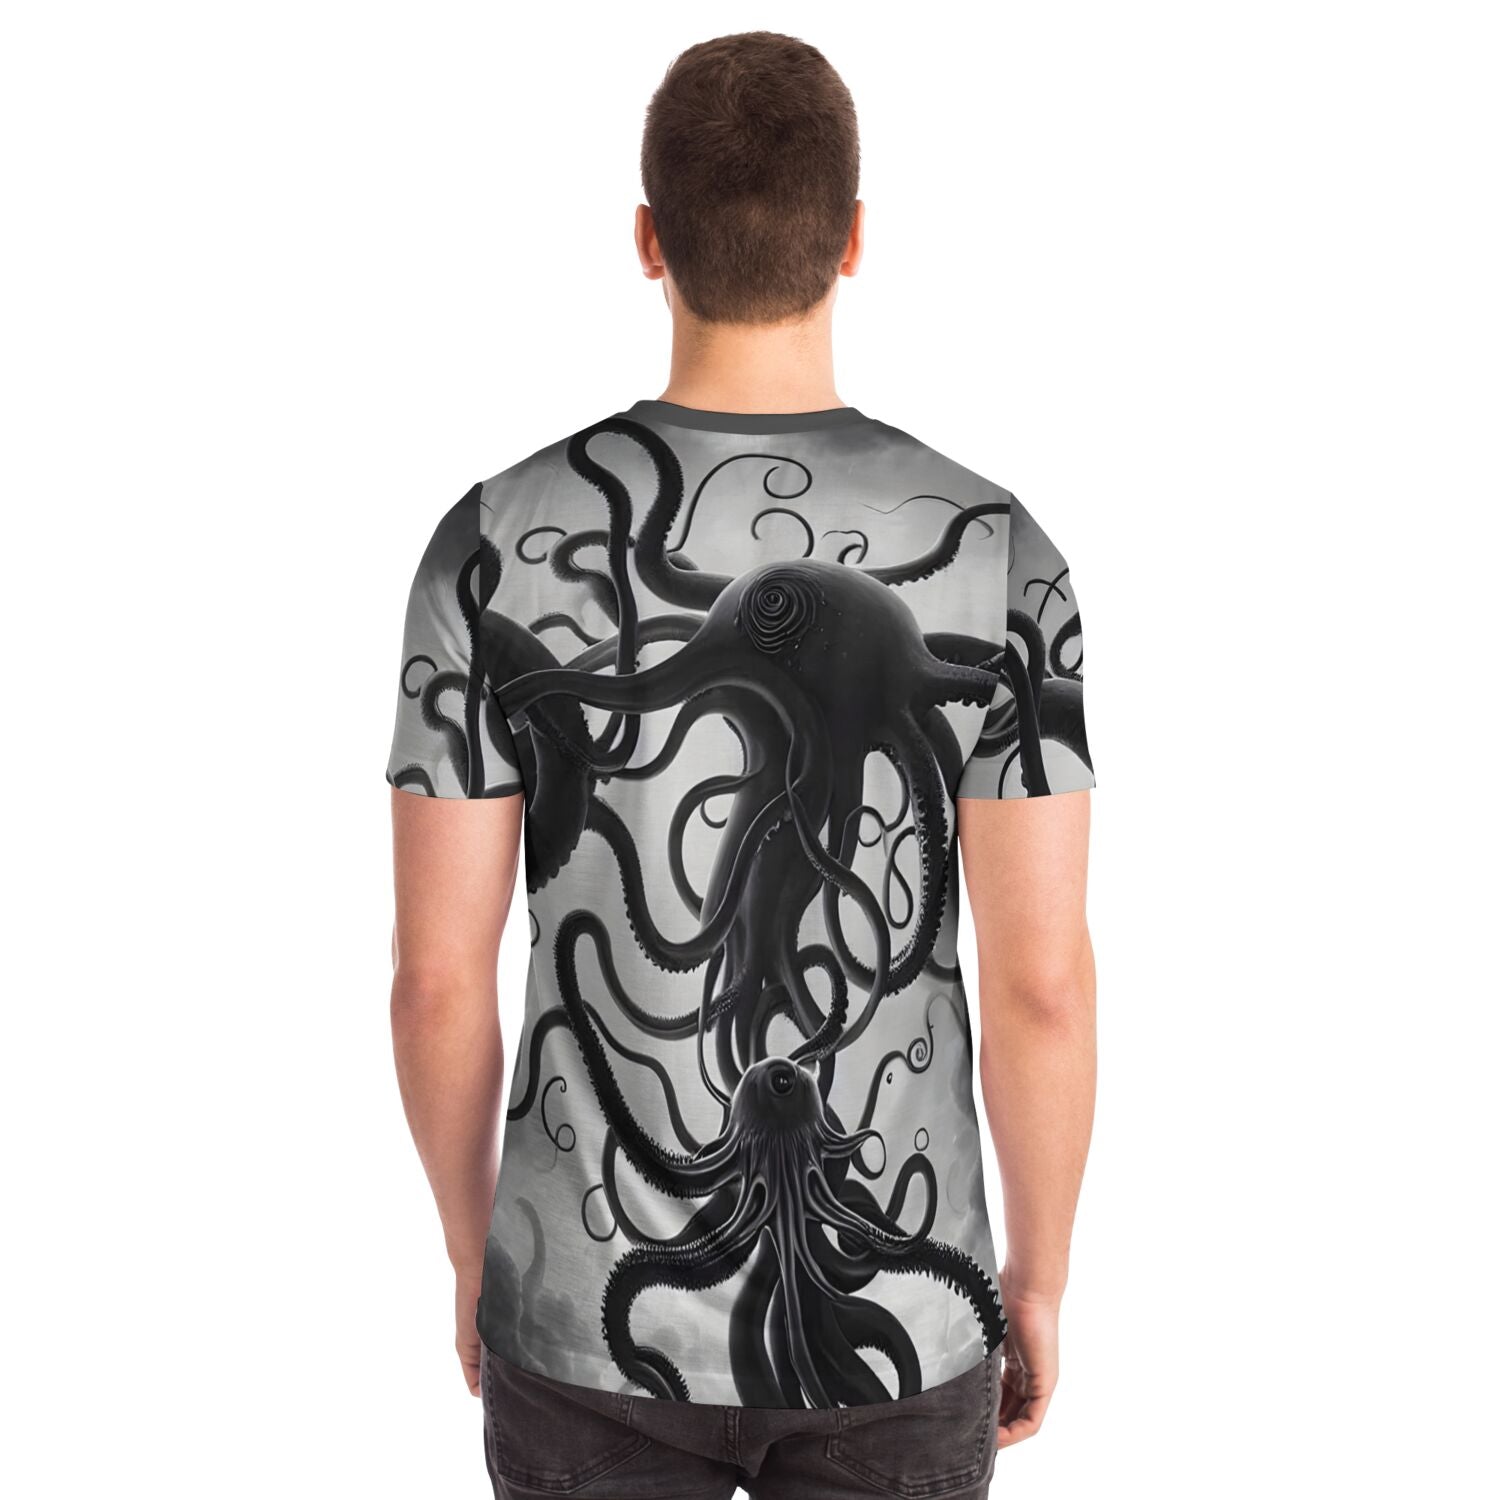 T-shirt Extraterrestrial Octopus Original Art | Alien Invasion, War of the Worlds | Lovecraft Cthulhu | Surreal Art T-Shirt